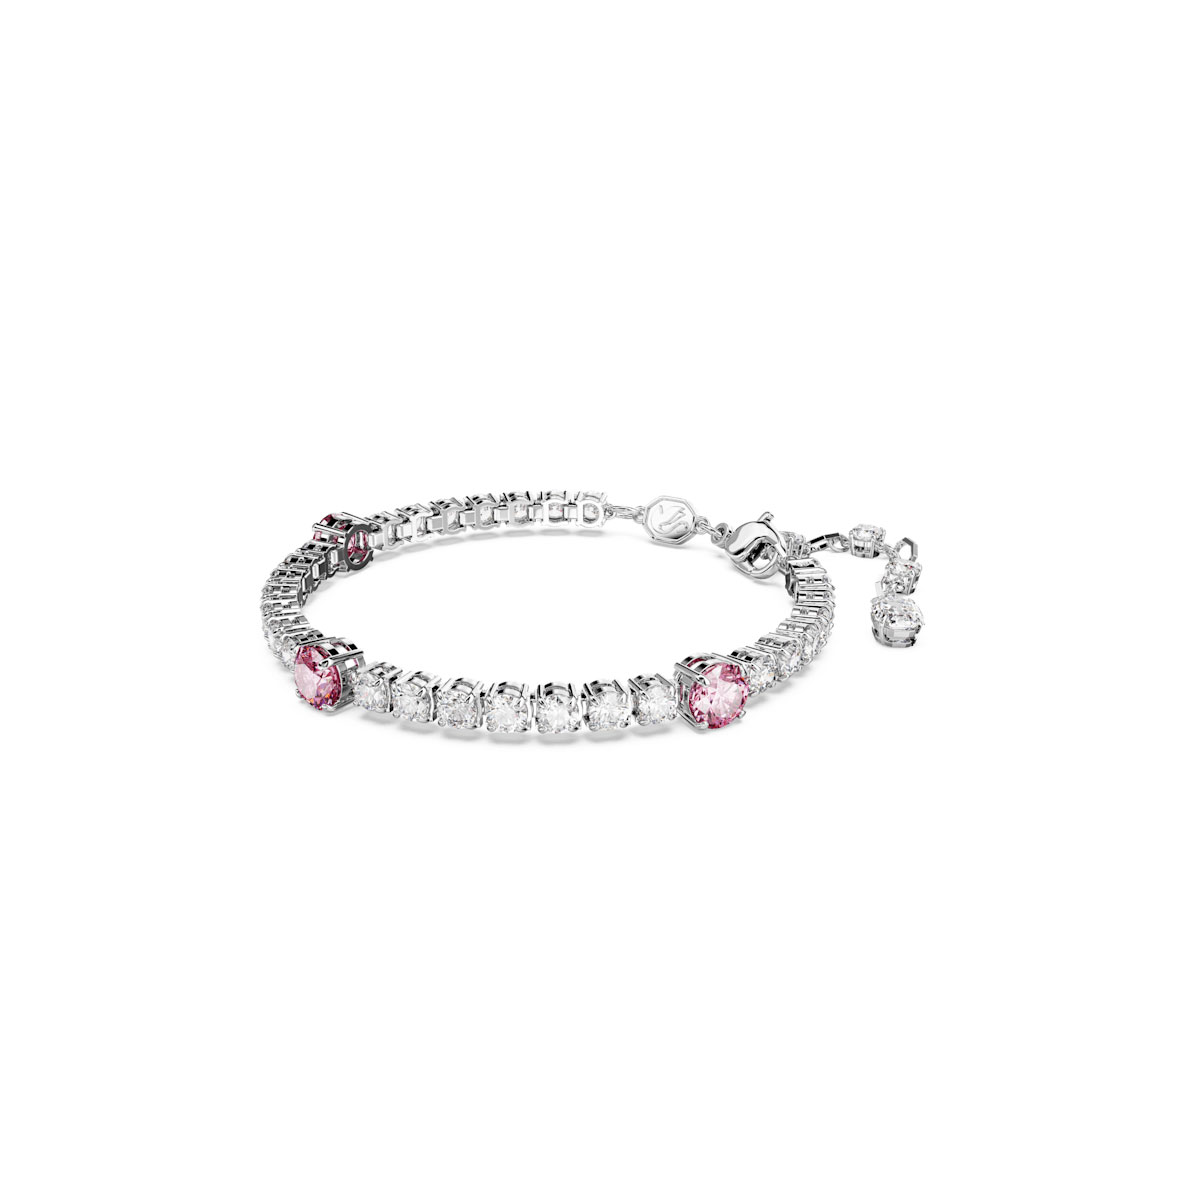 Swarovski Jewelry Matrix Pink and Clear Rhodium Mixed Cuts Tennis Bracelet